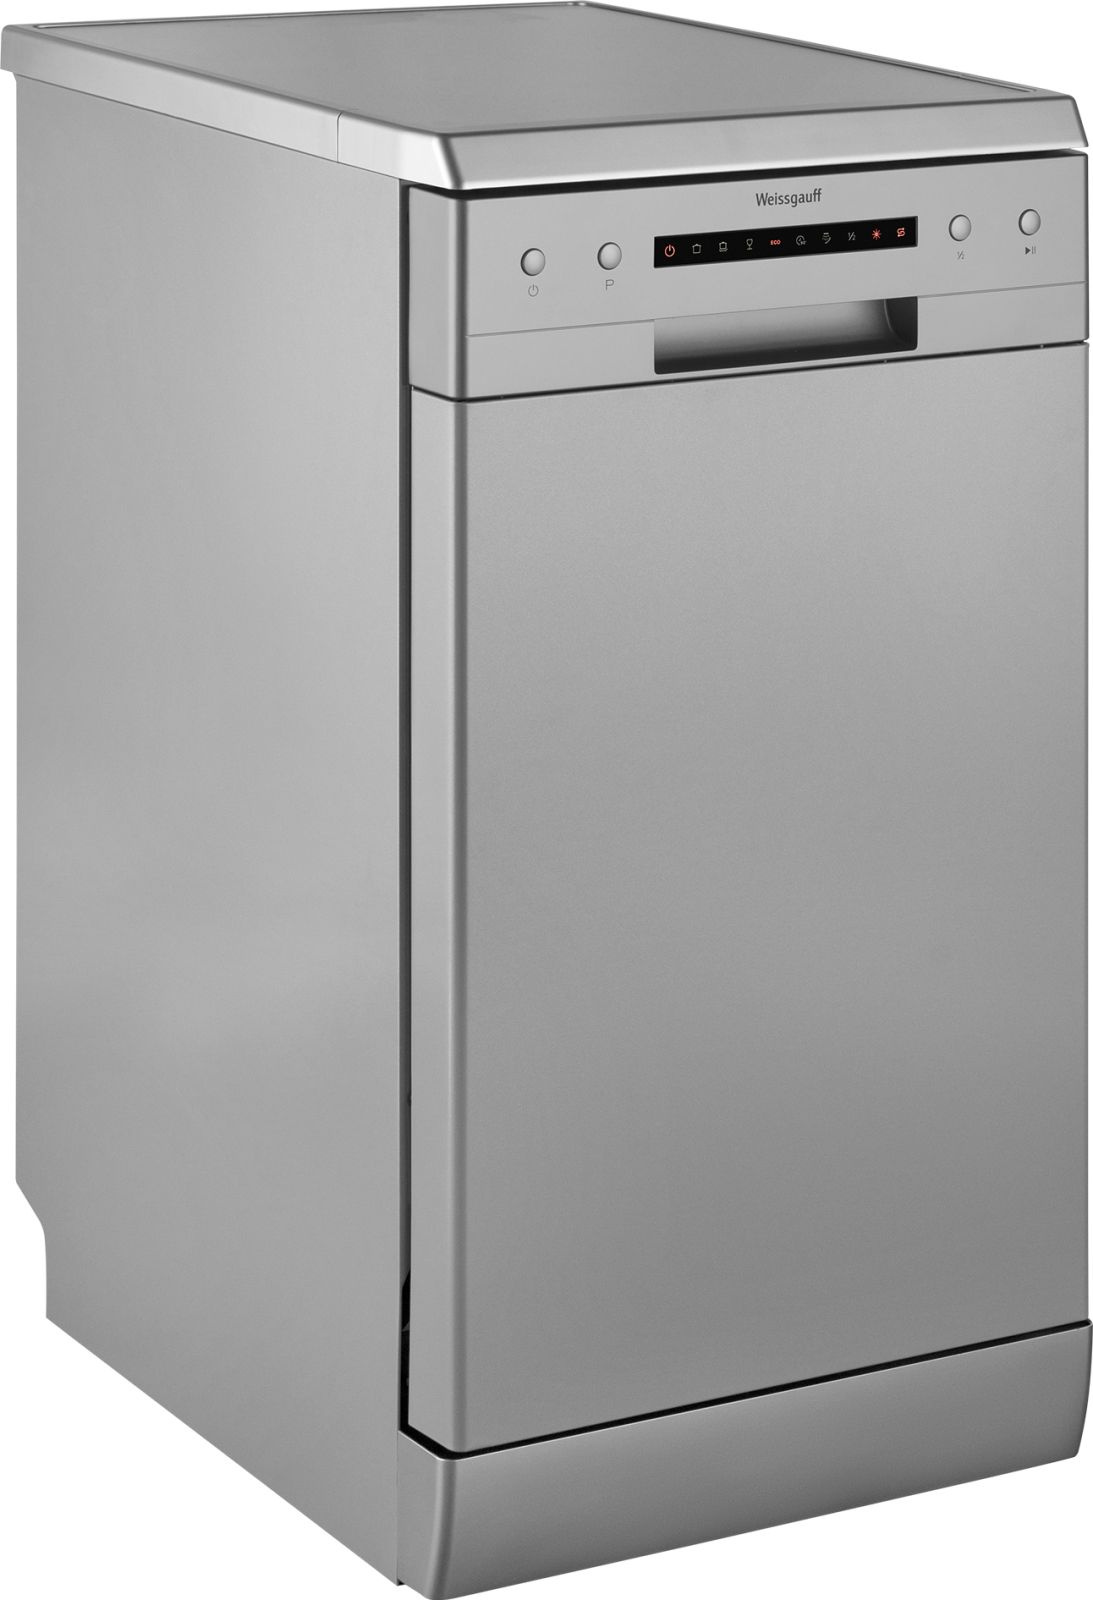 Посудомоечная машина Weissgauff DW 4526 серебристый (узкая)